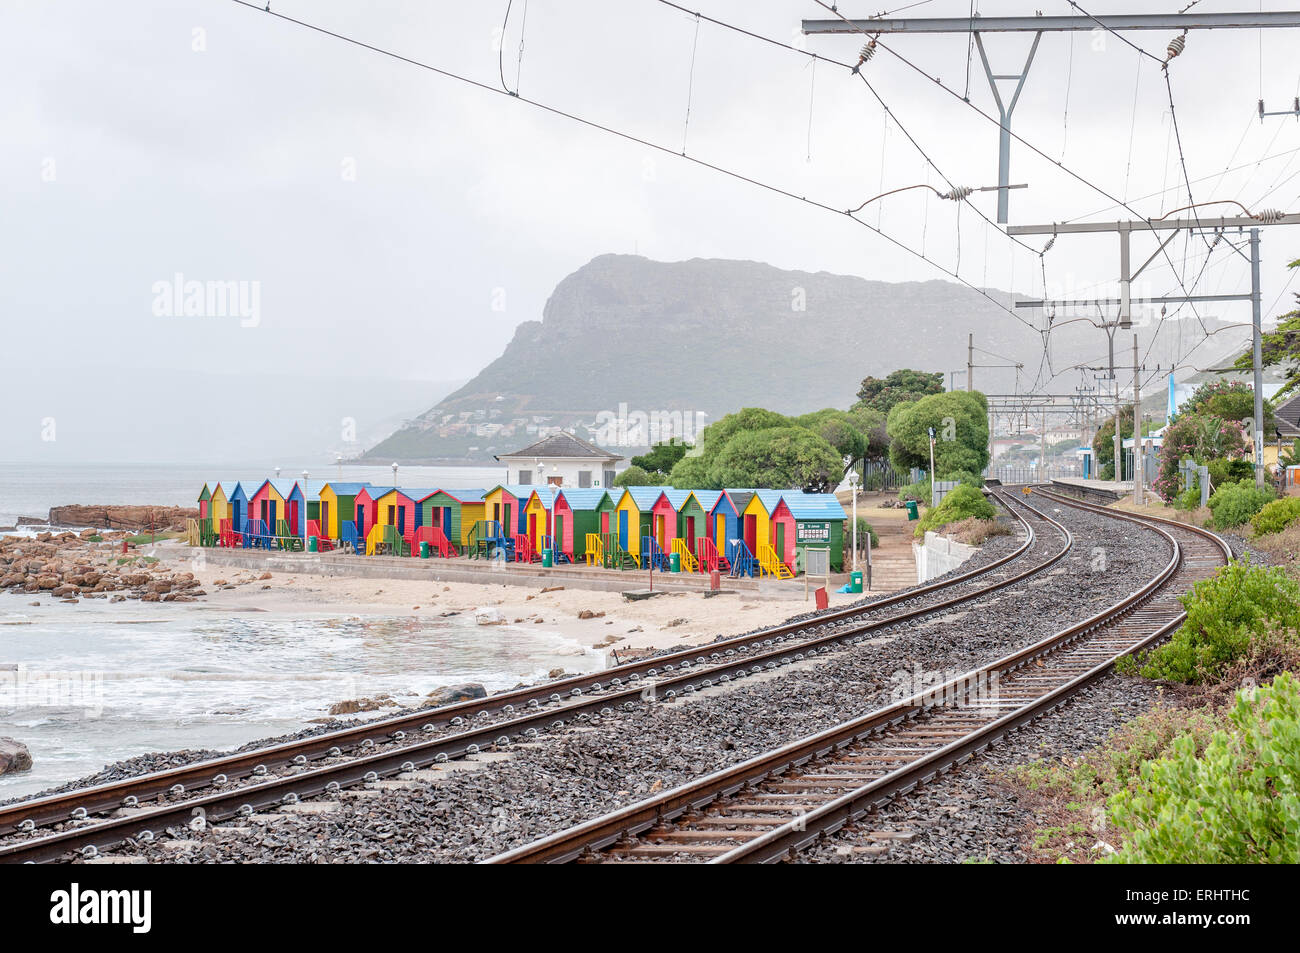 Multicolores de cabañas de playa en St. James en Cape Town, Provincia del Cabo Occidental de Sudáfrica. La estación de ferrocarril y es visible Foto de stock